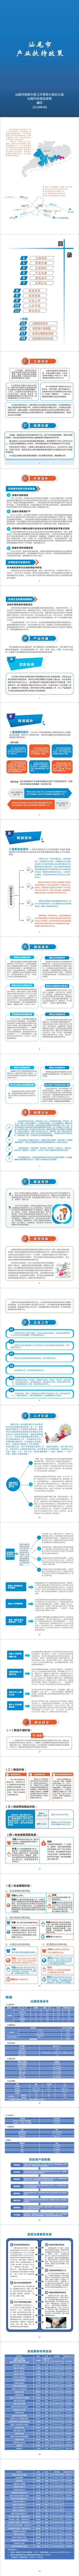 投资促进局 产业扶持政策中文版2020.4_0.jpg